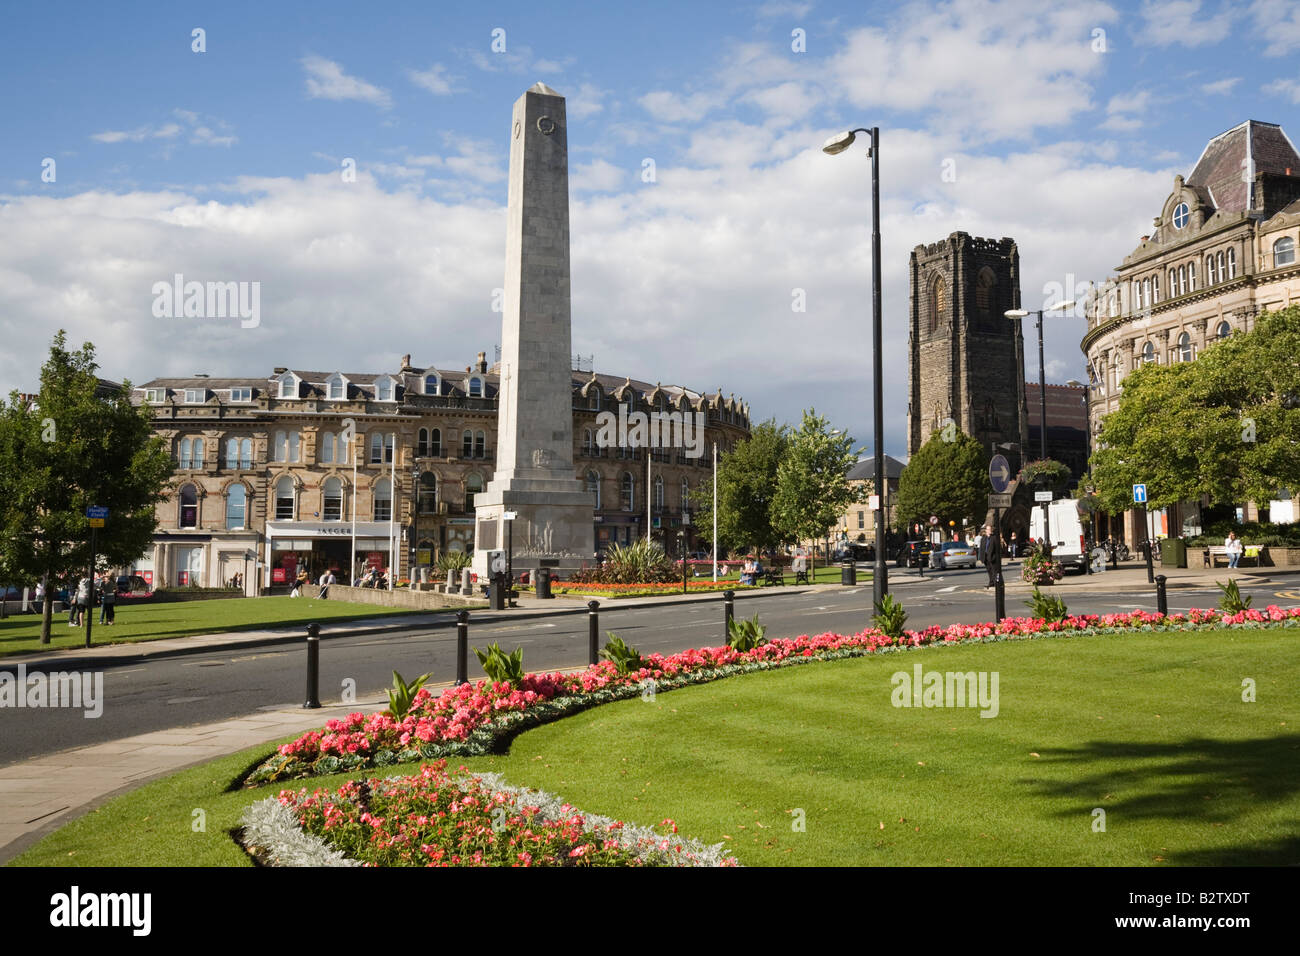 Il cenotafio War Memorial obelisco di tutta la prospettiva di giardini in centro città in estate. Harrogate North Yorkshire England Regno Unito Foto Stock